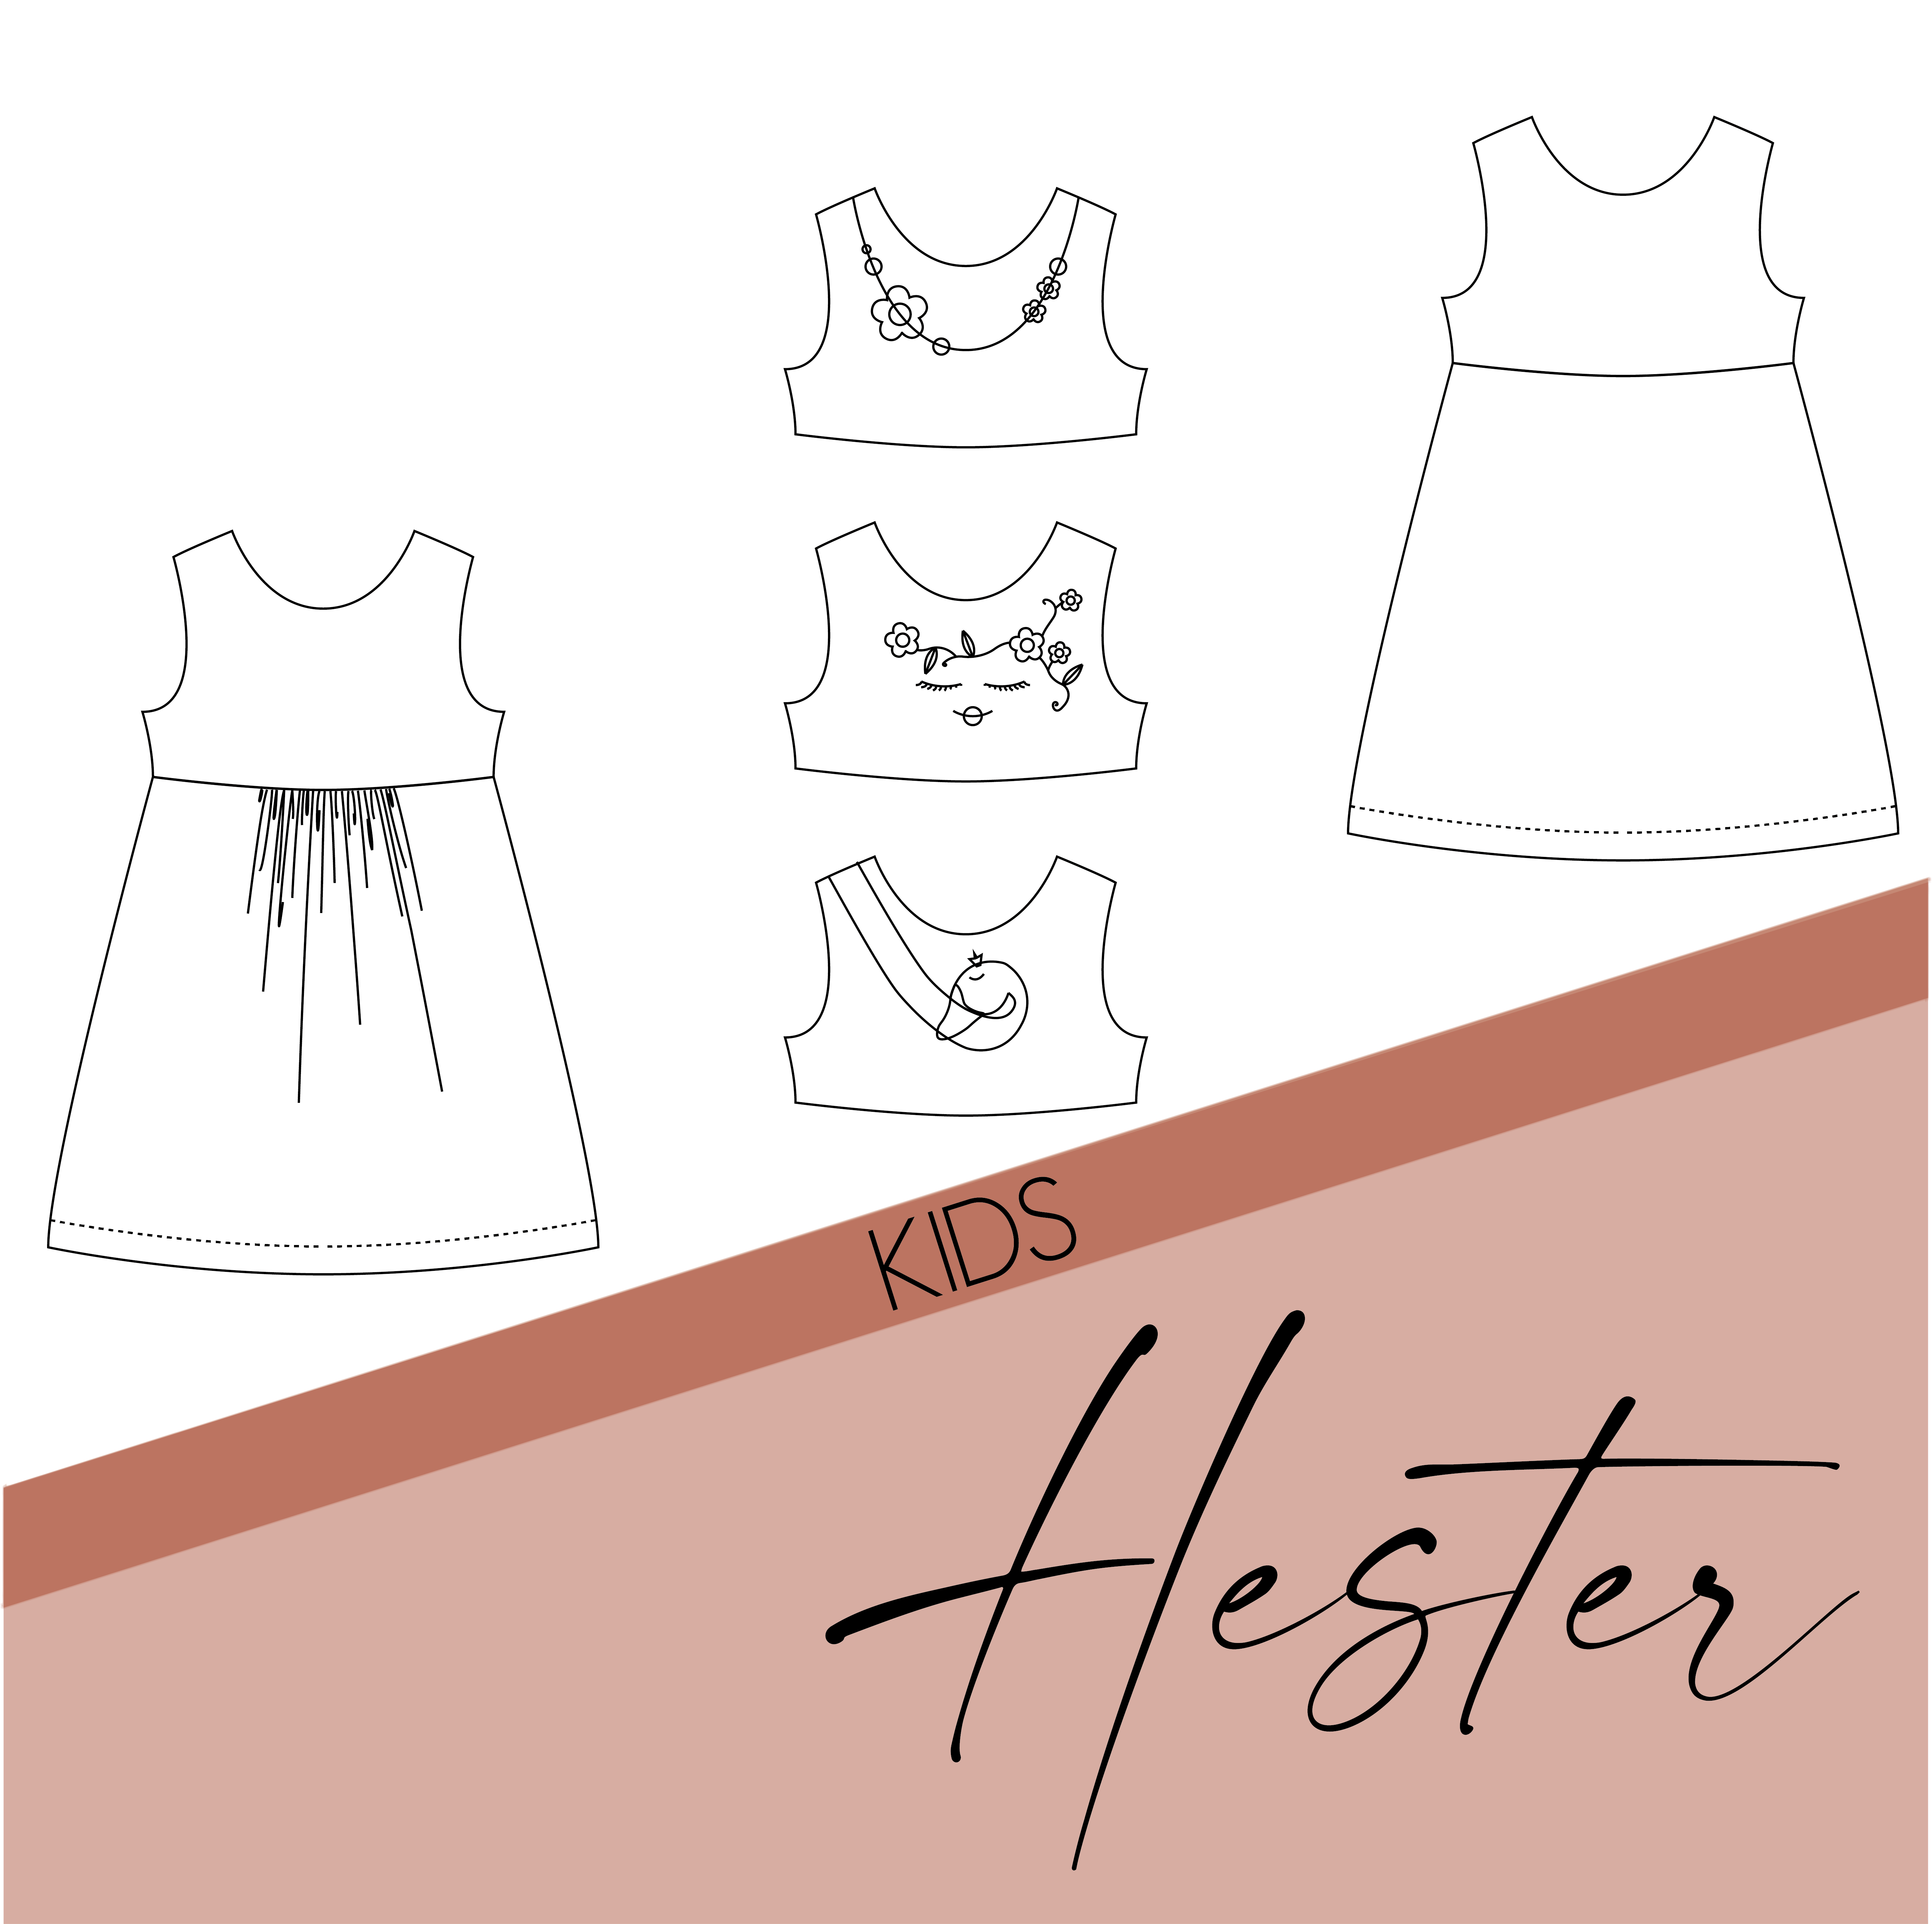 Hester - kids